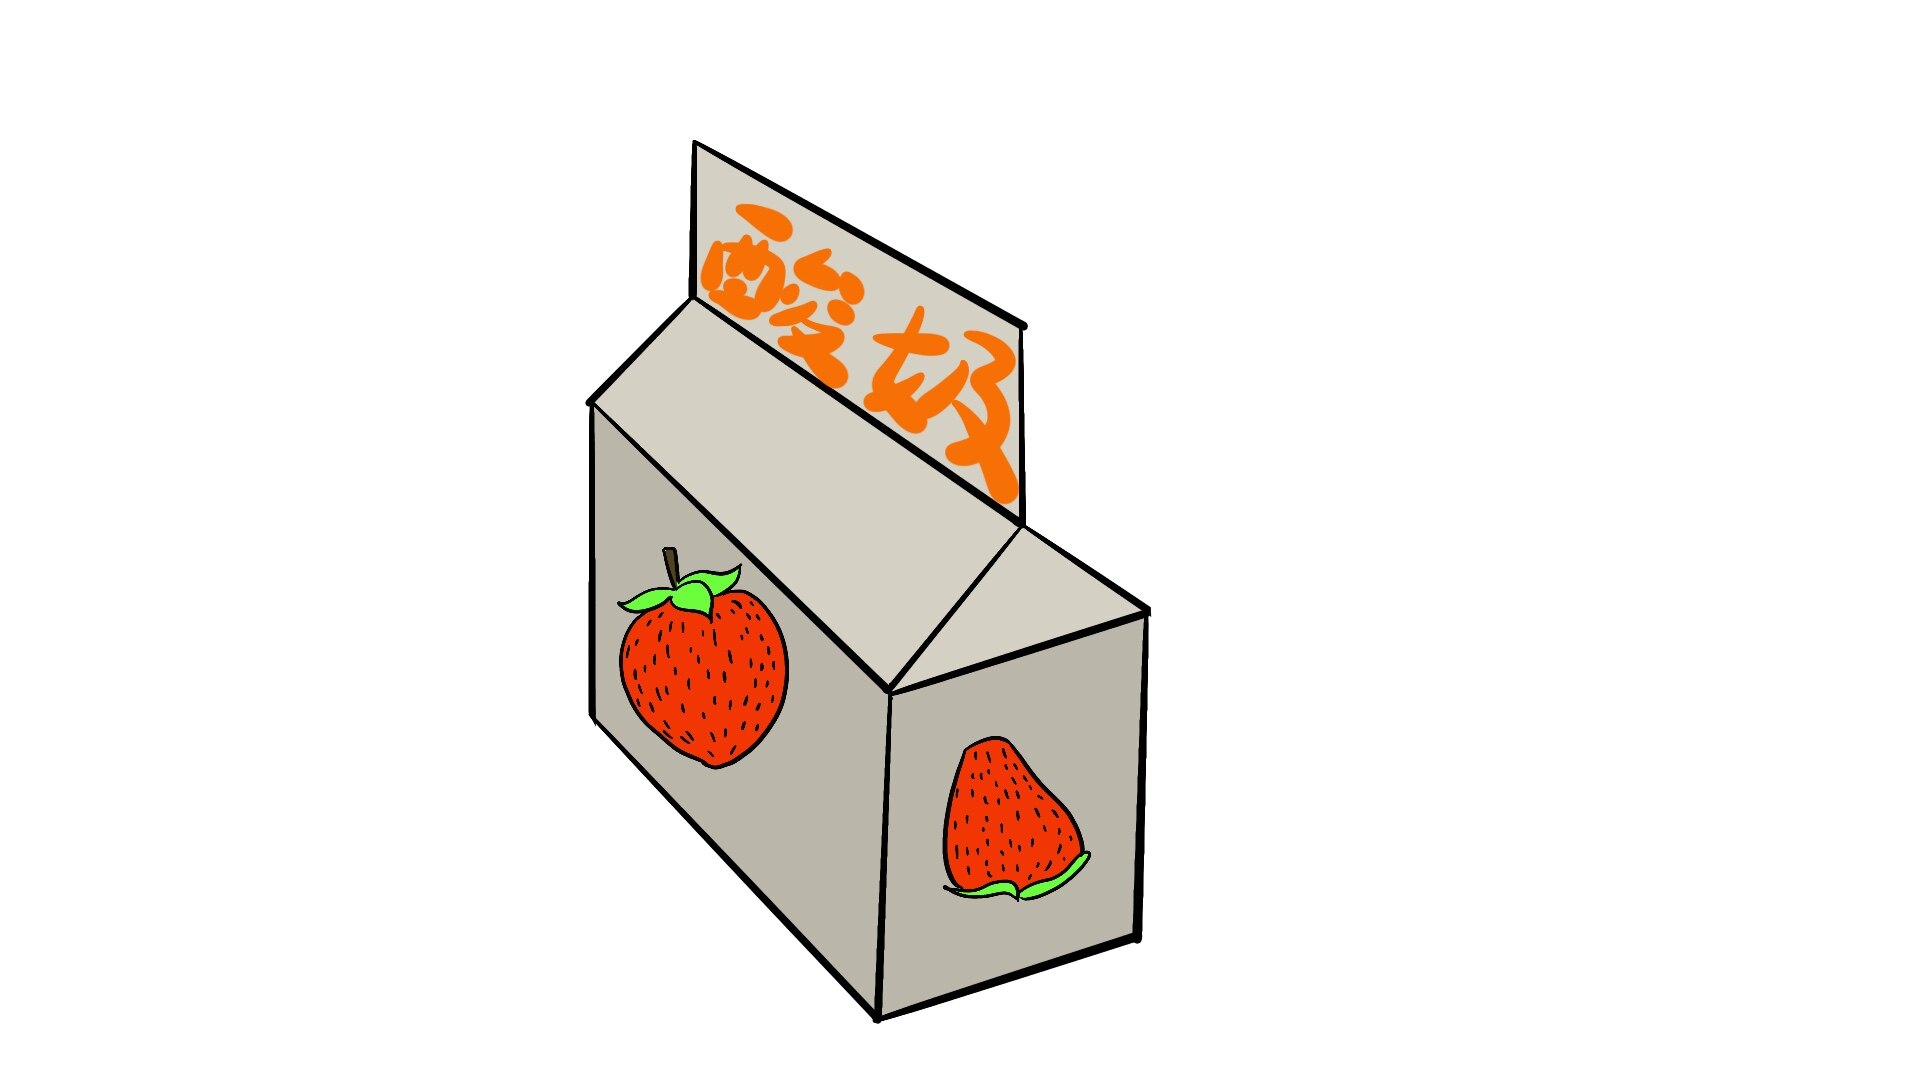 水果酸奶简笔画图片